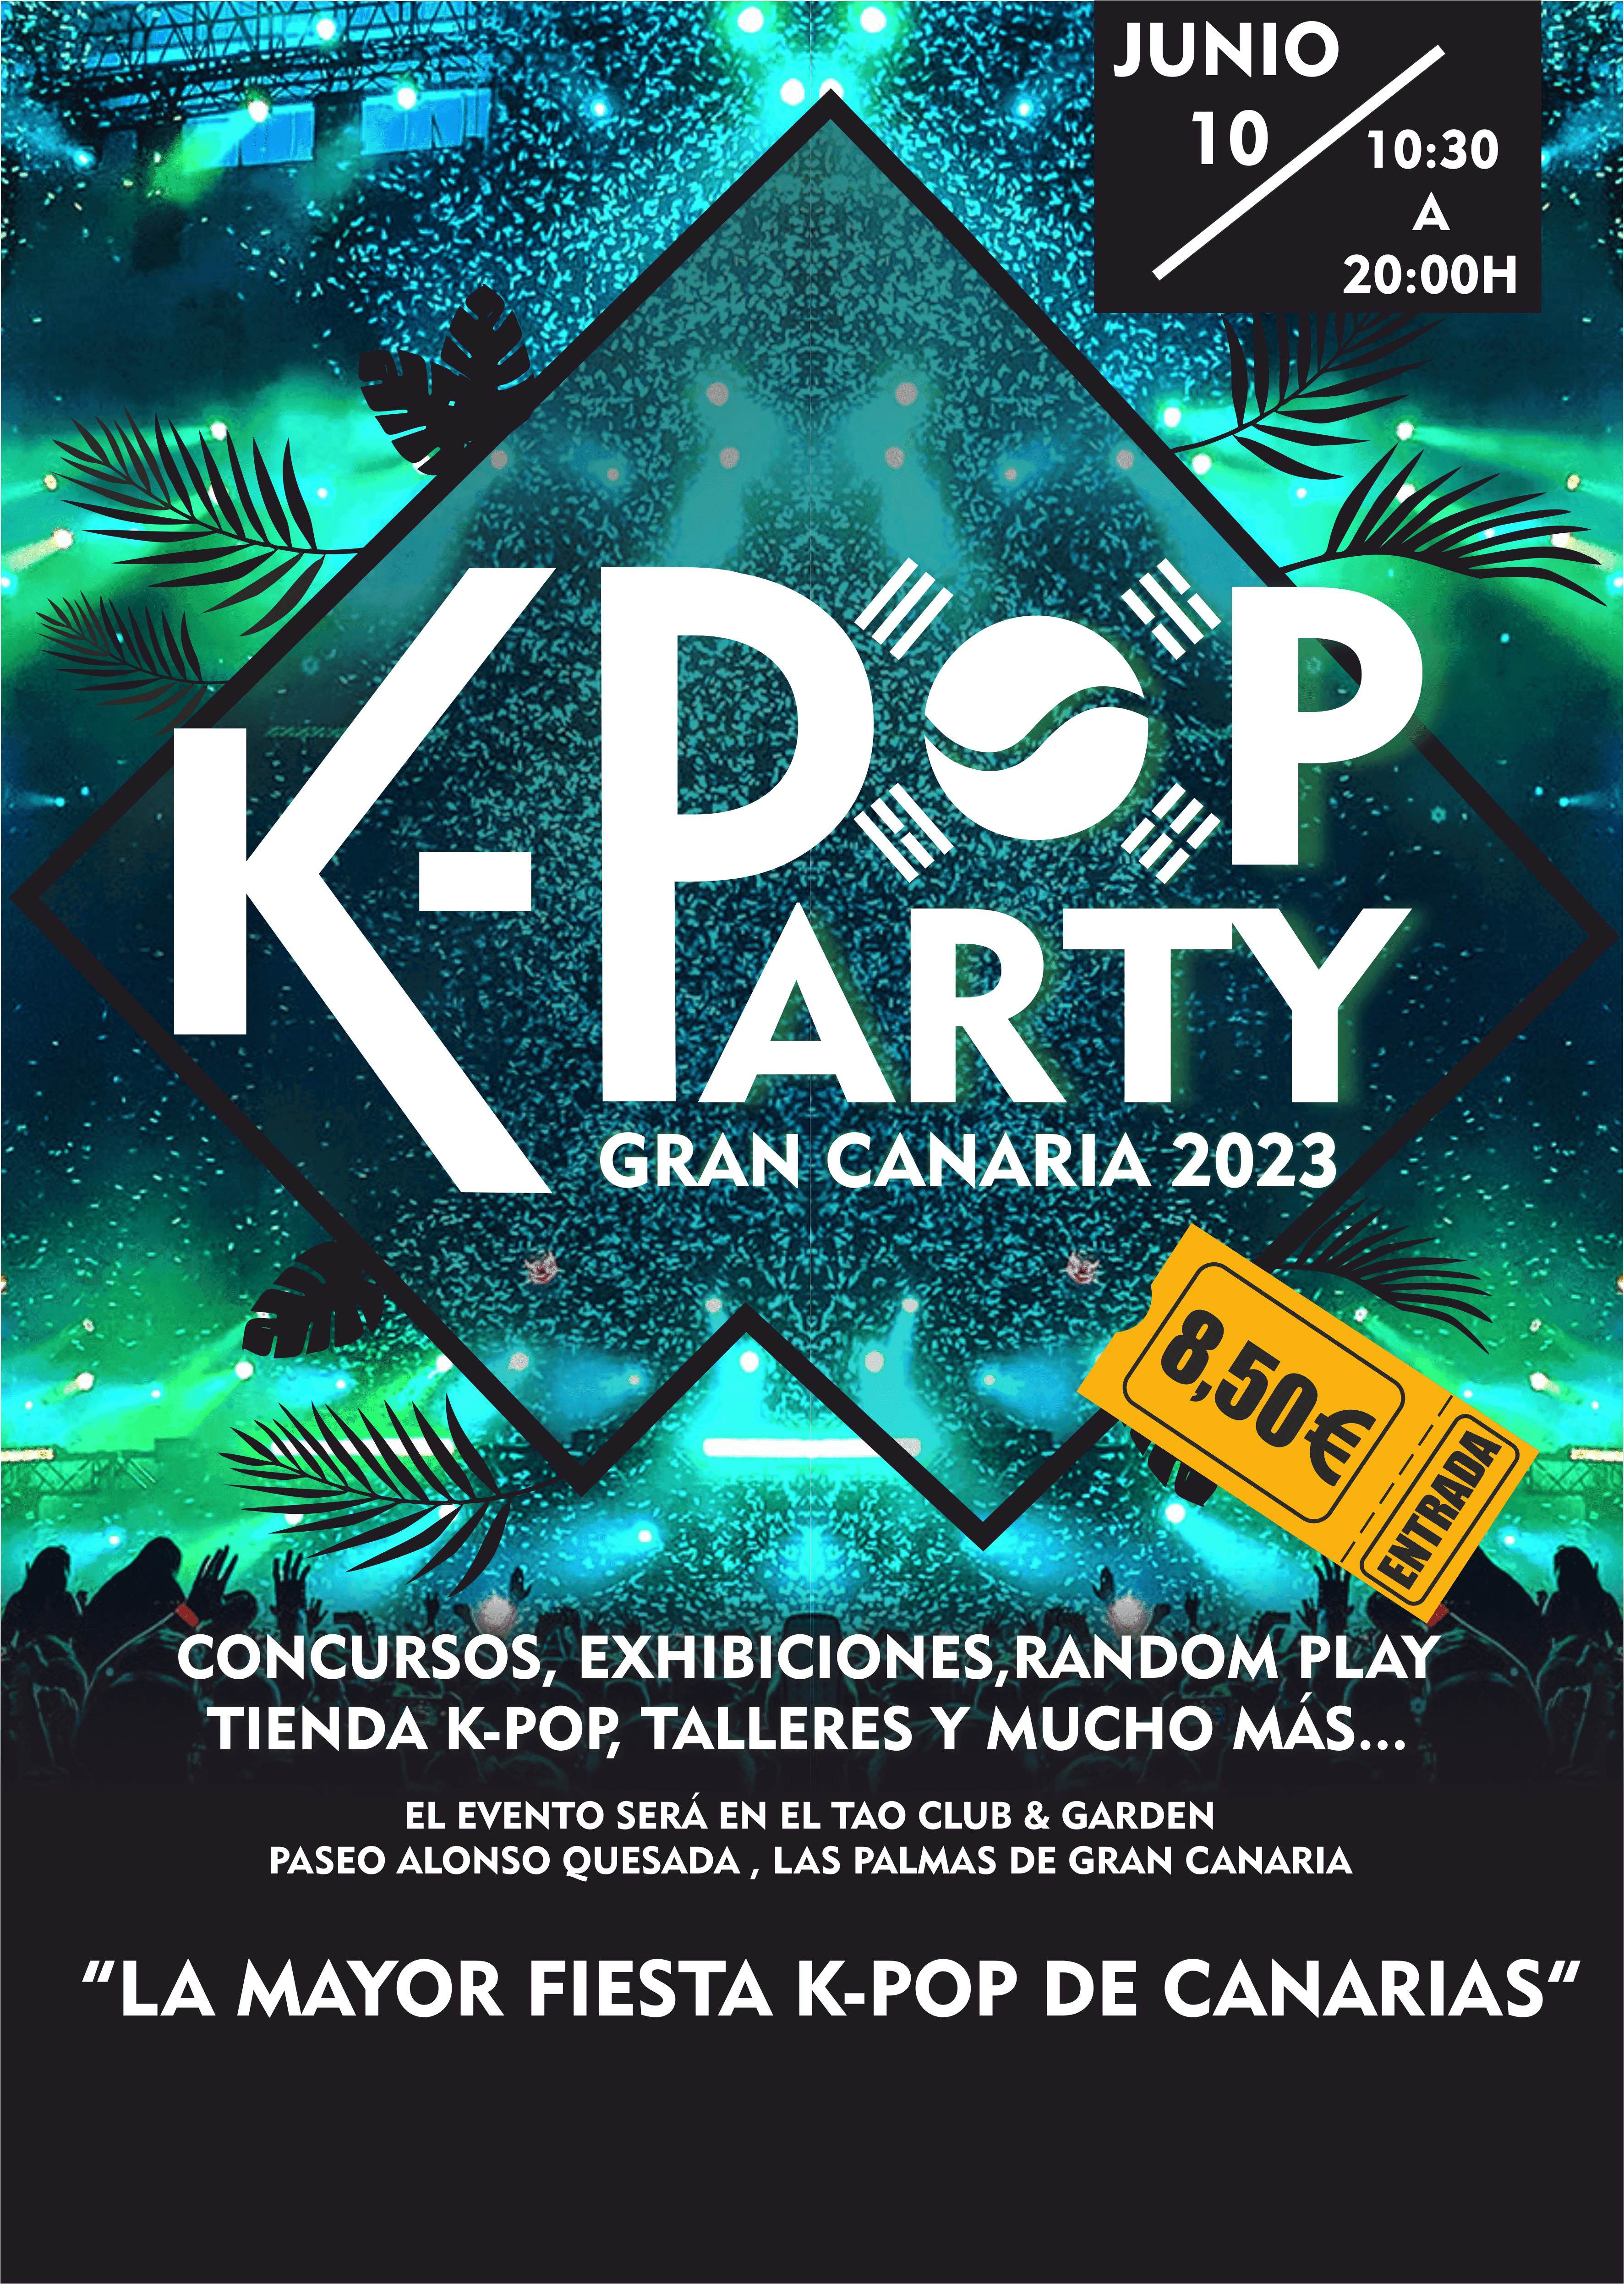 K-POP PARTY GRAN CANARIA en Las Palmas de Gran Canaria